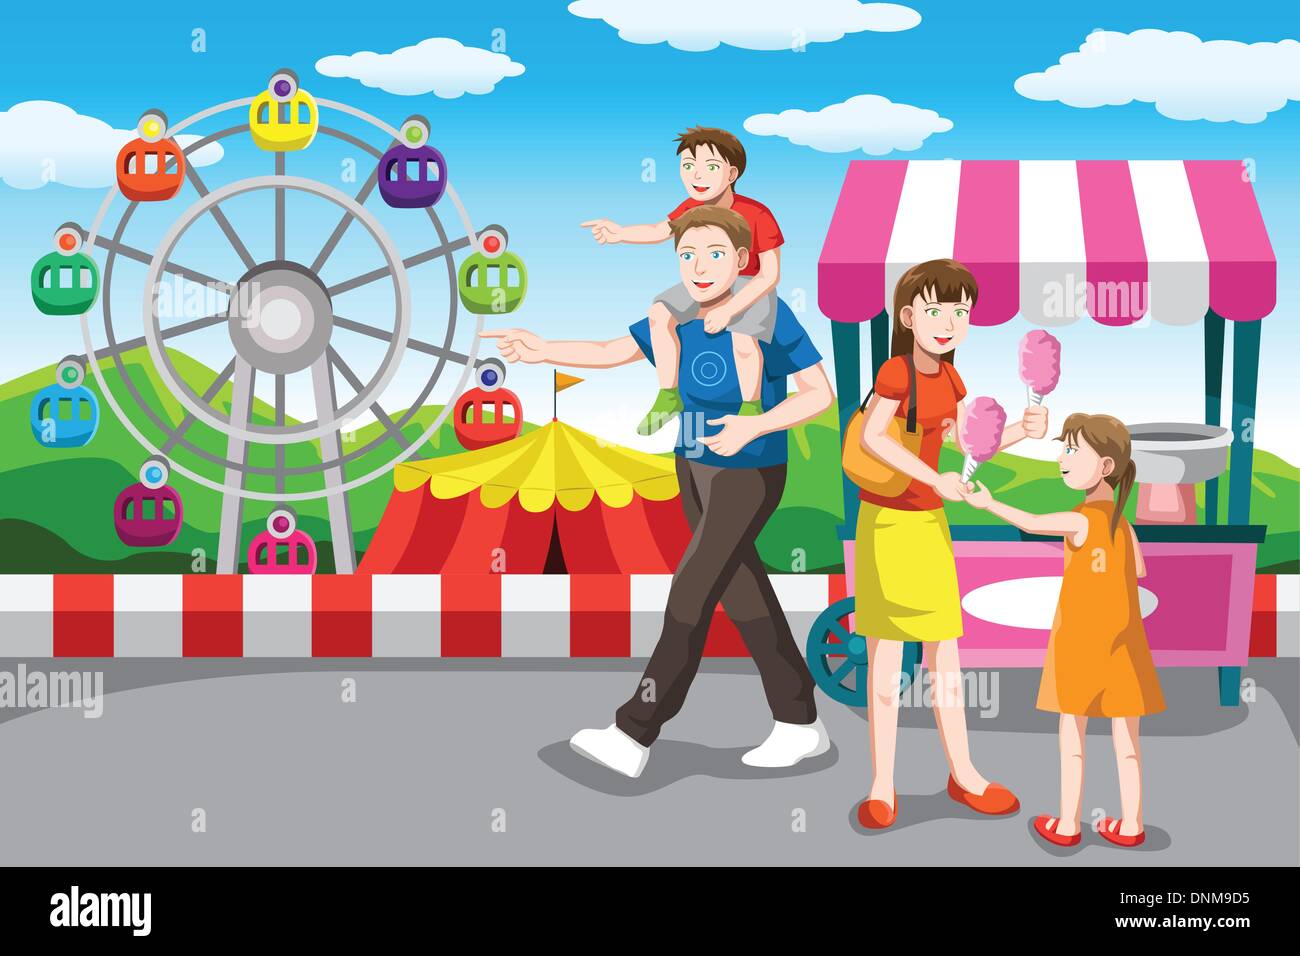 Un vecteur illustration d'une famille heureuse dans le parc d'attractions de loisirs Illustration de Vecteur